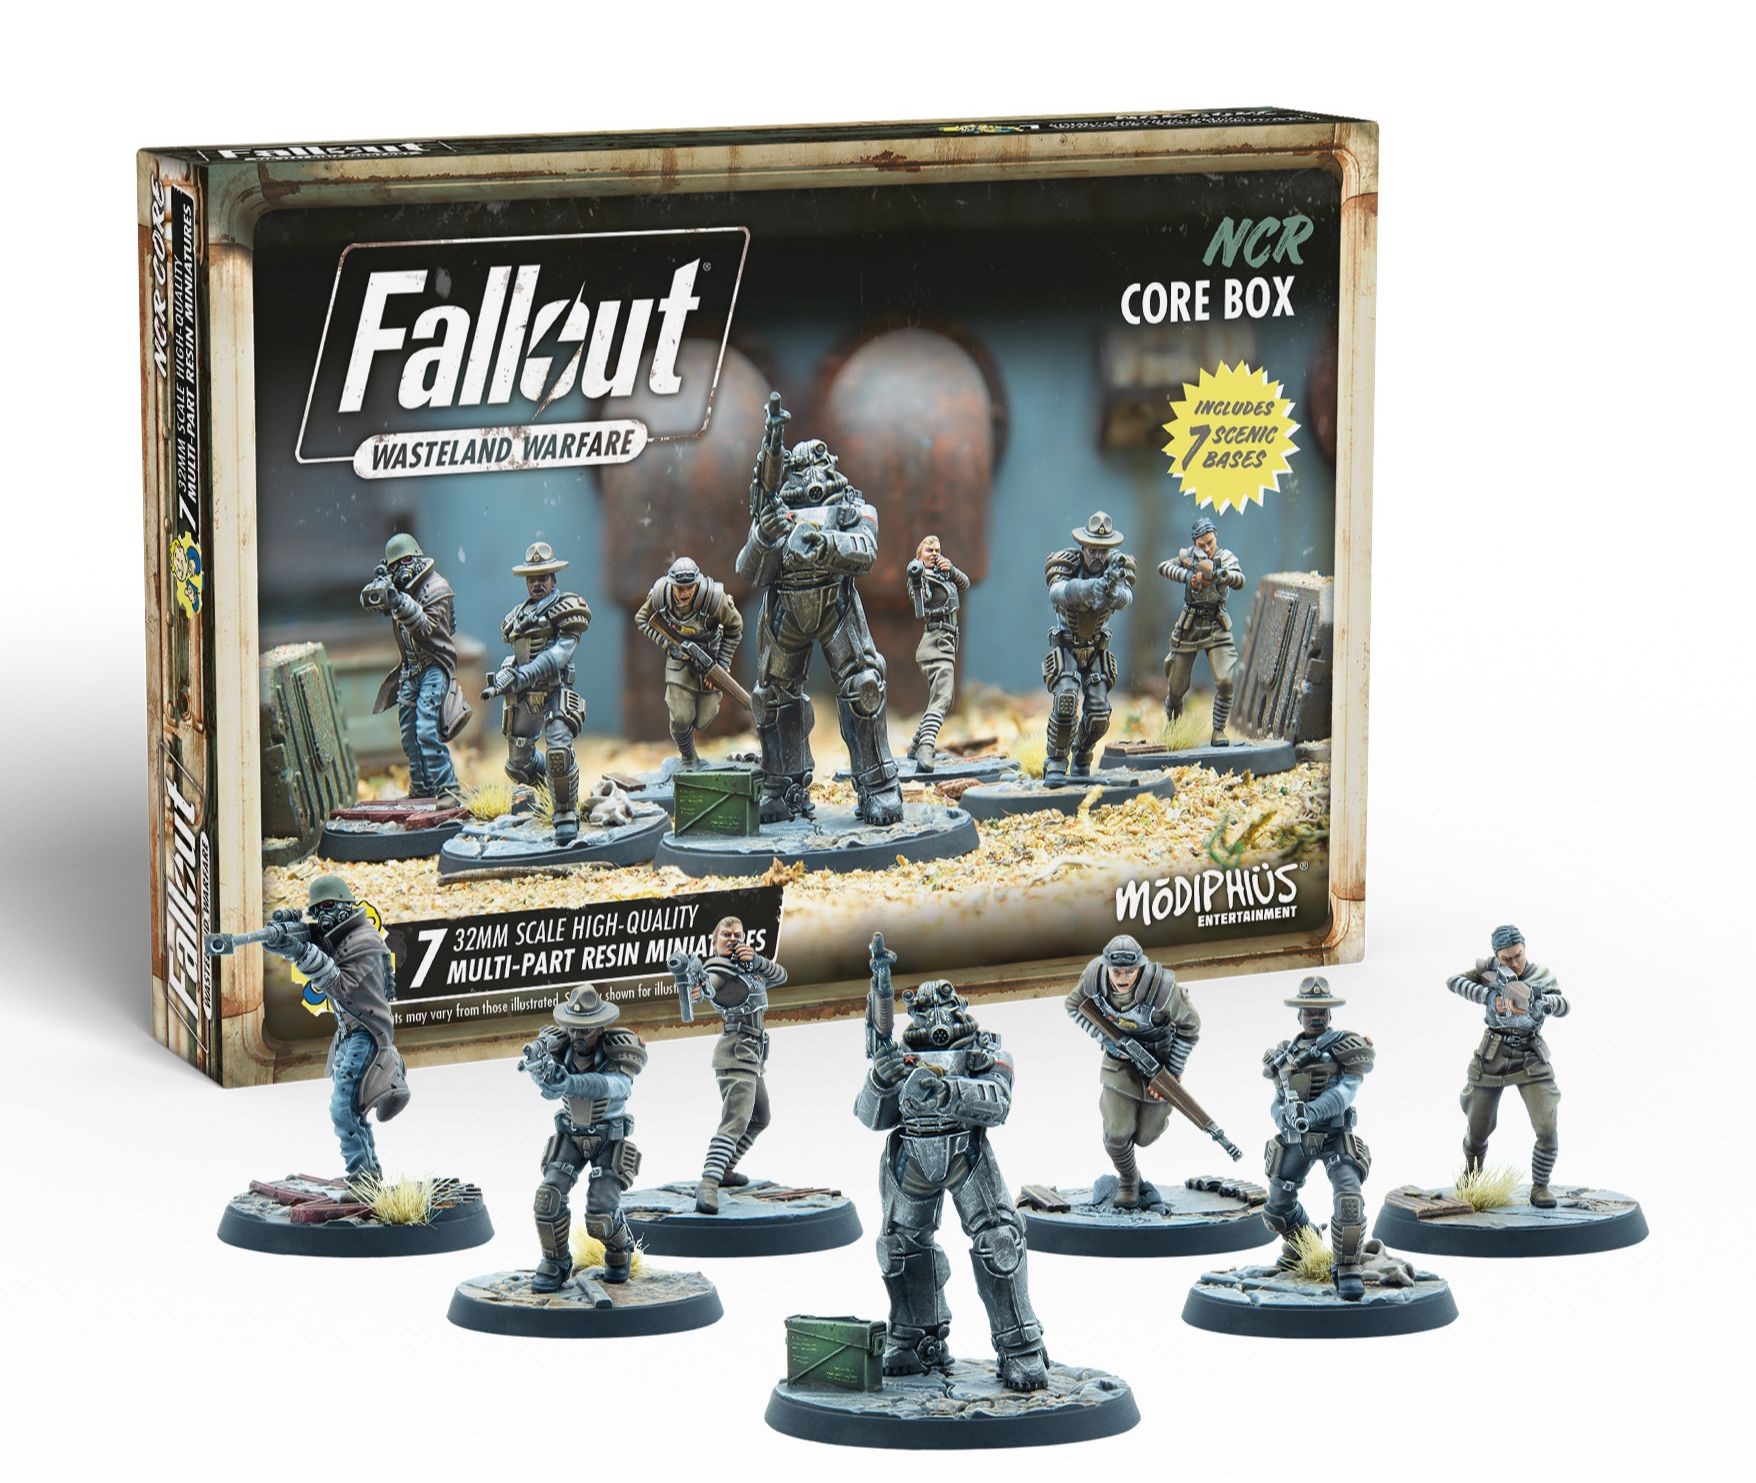 Fallout: Wasteland Warfare: NCR Core Box 